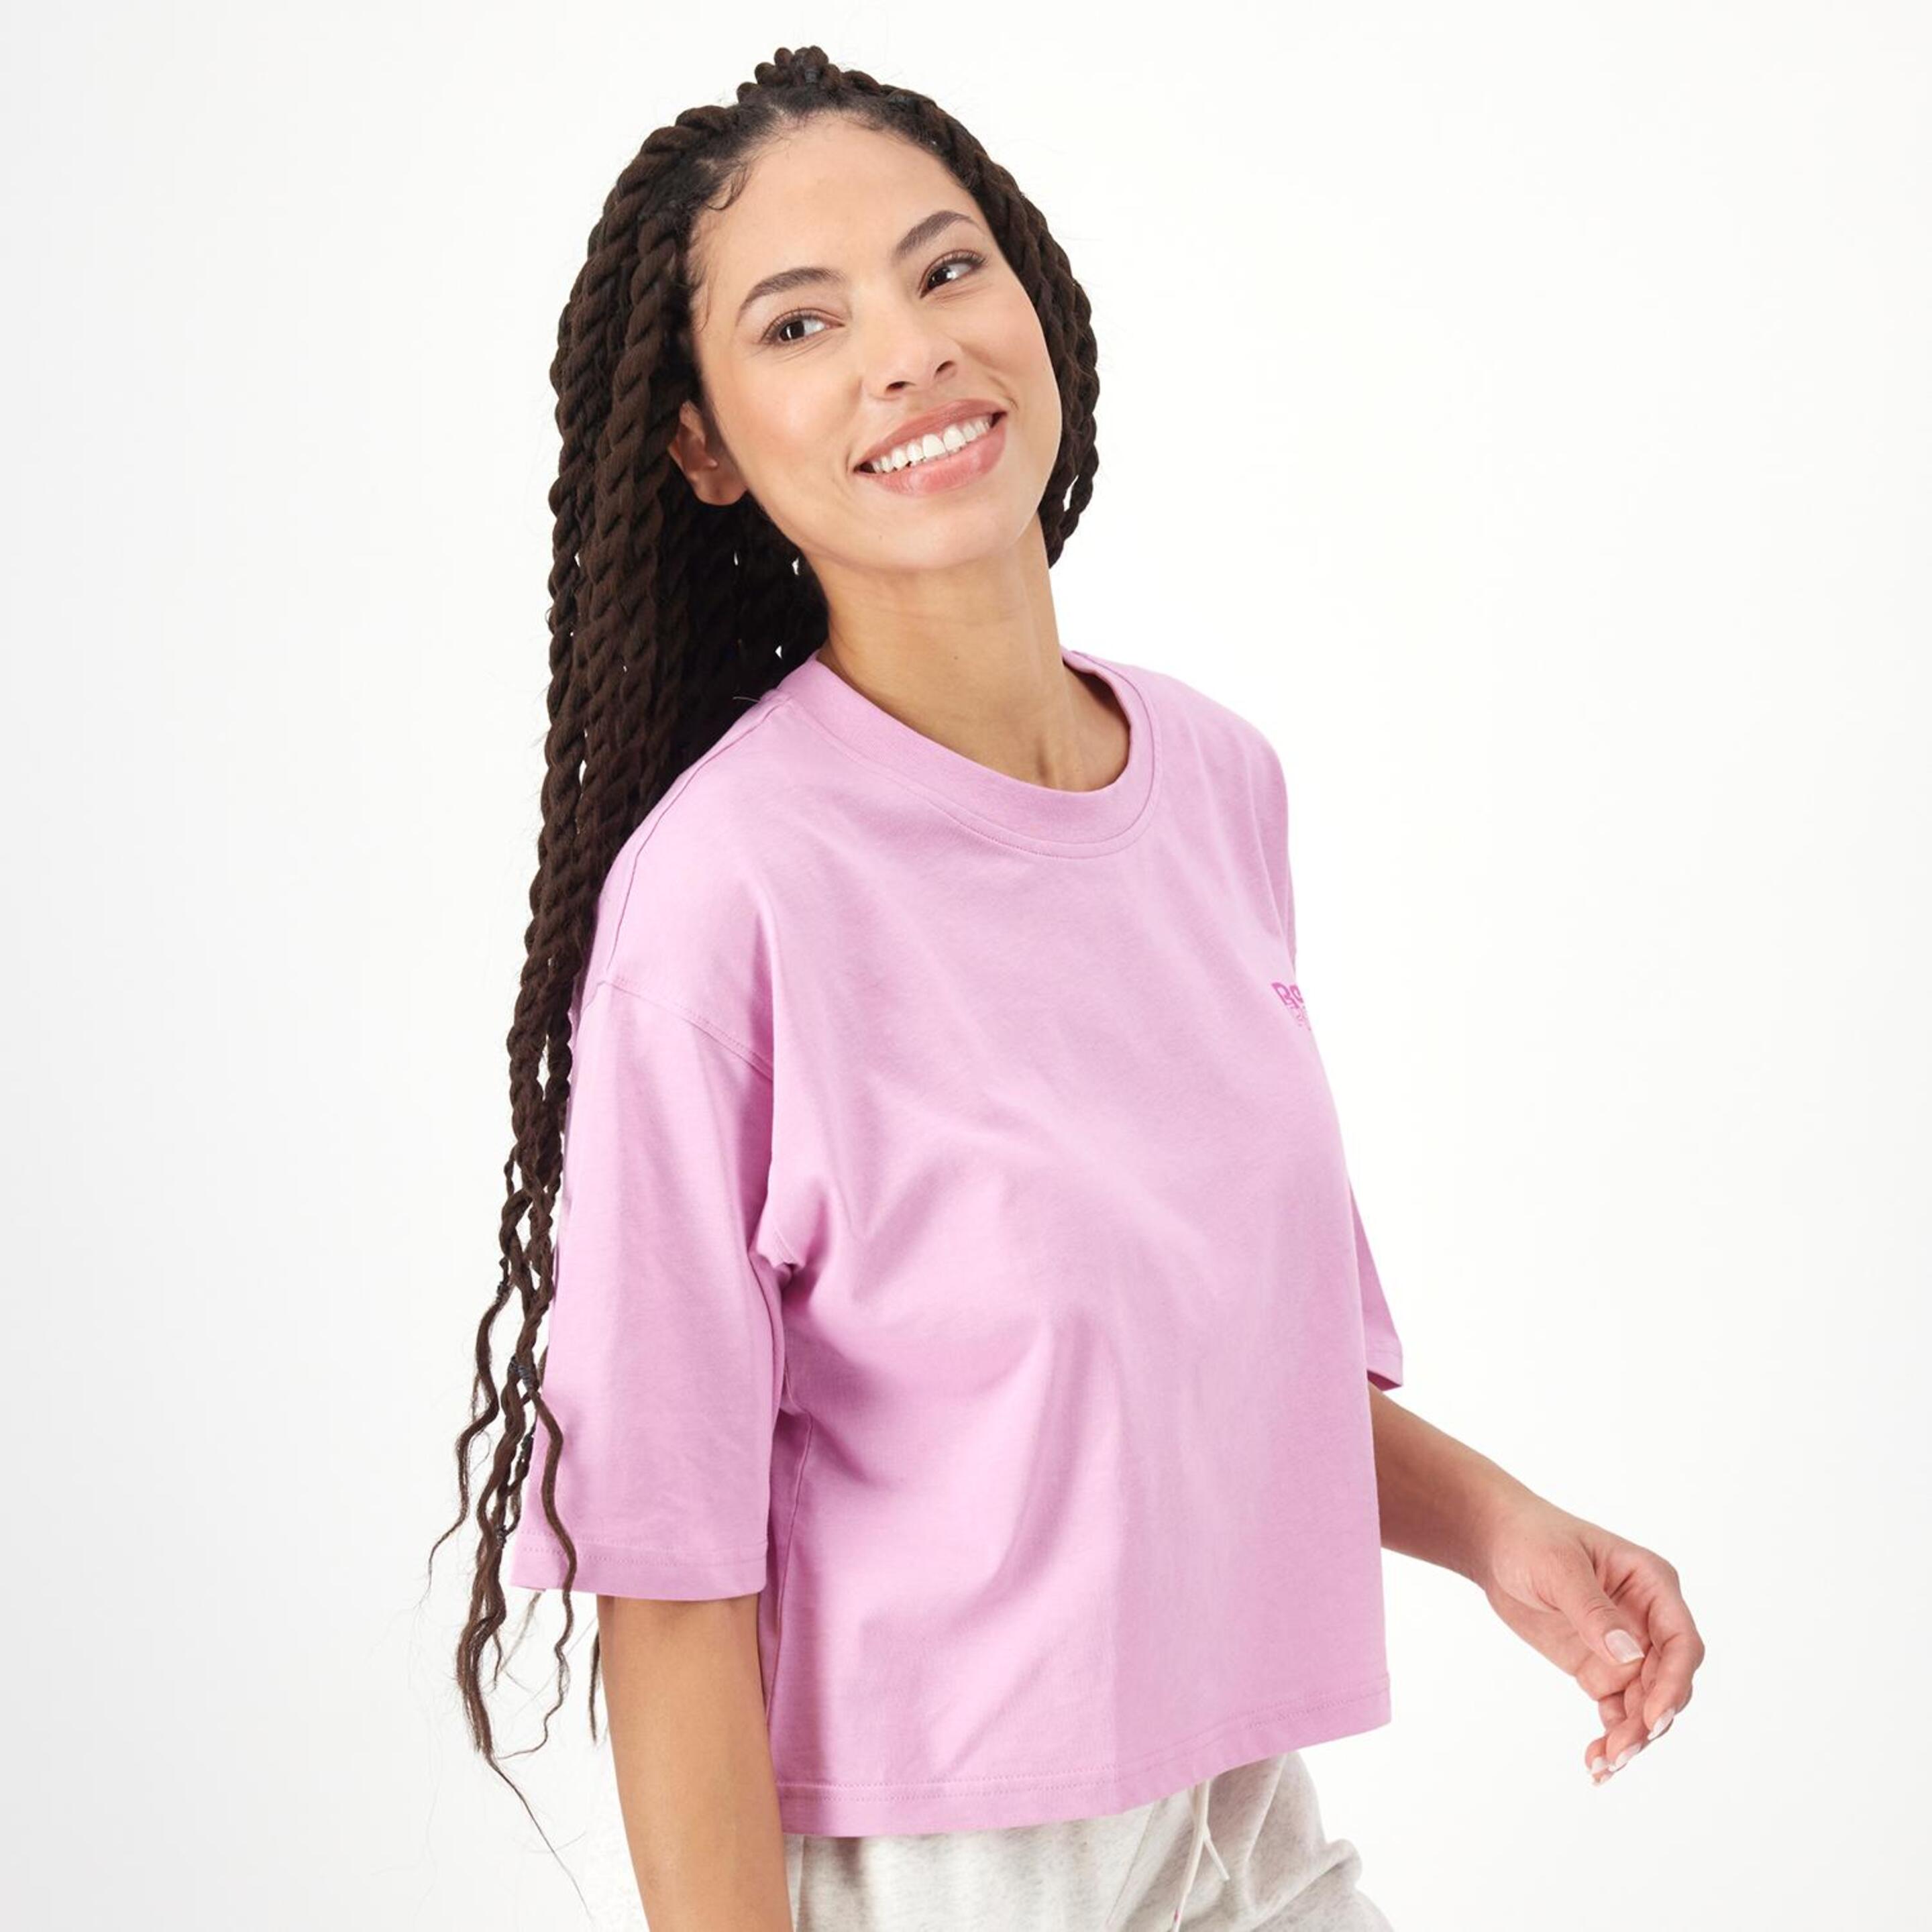 Reebok Rie - Rosa - Camiseta Boxy Mujer